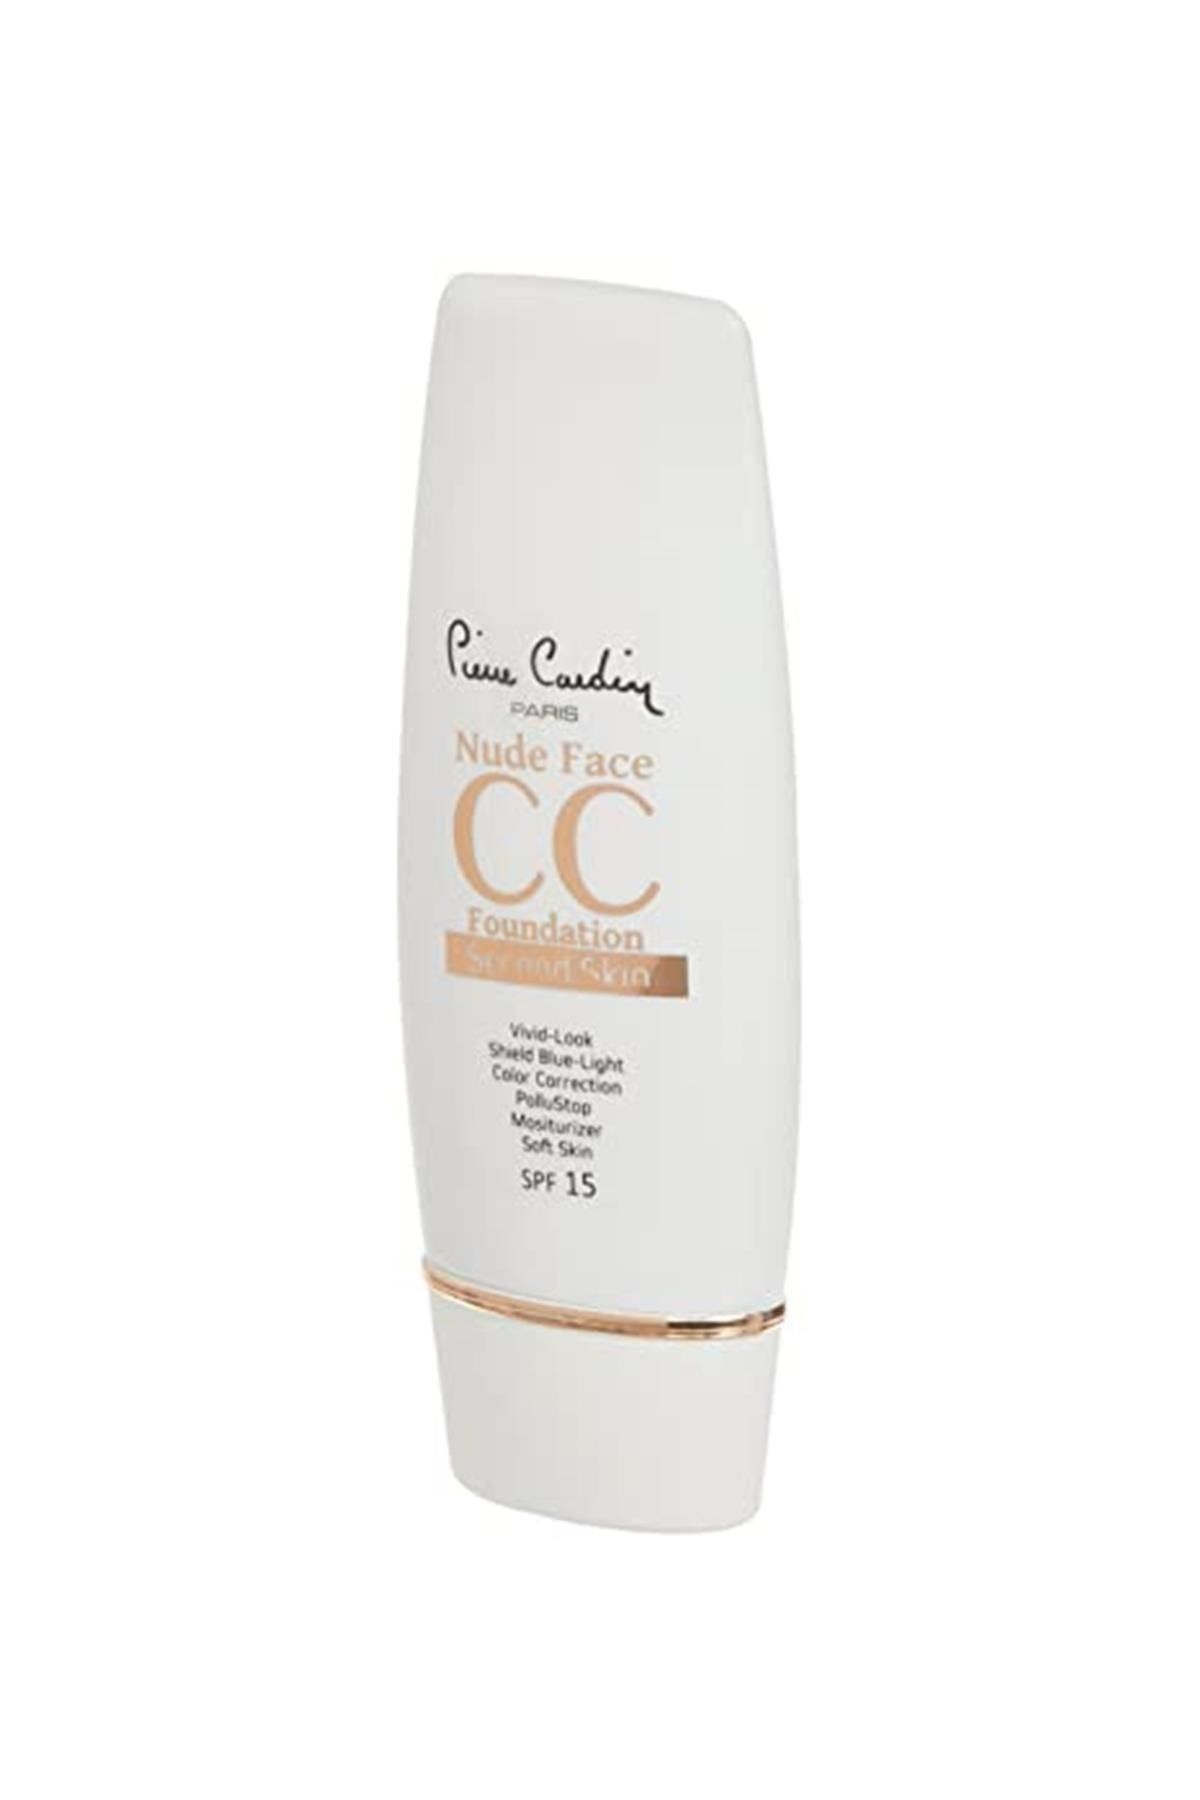 Pierre Cardin Nude Face Cc Cream (spf 15) - Medium Deep, 30 Ml